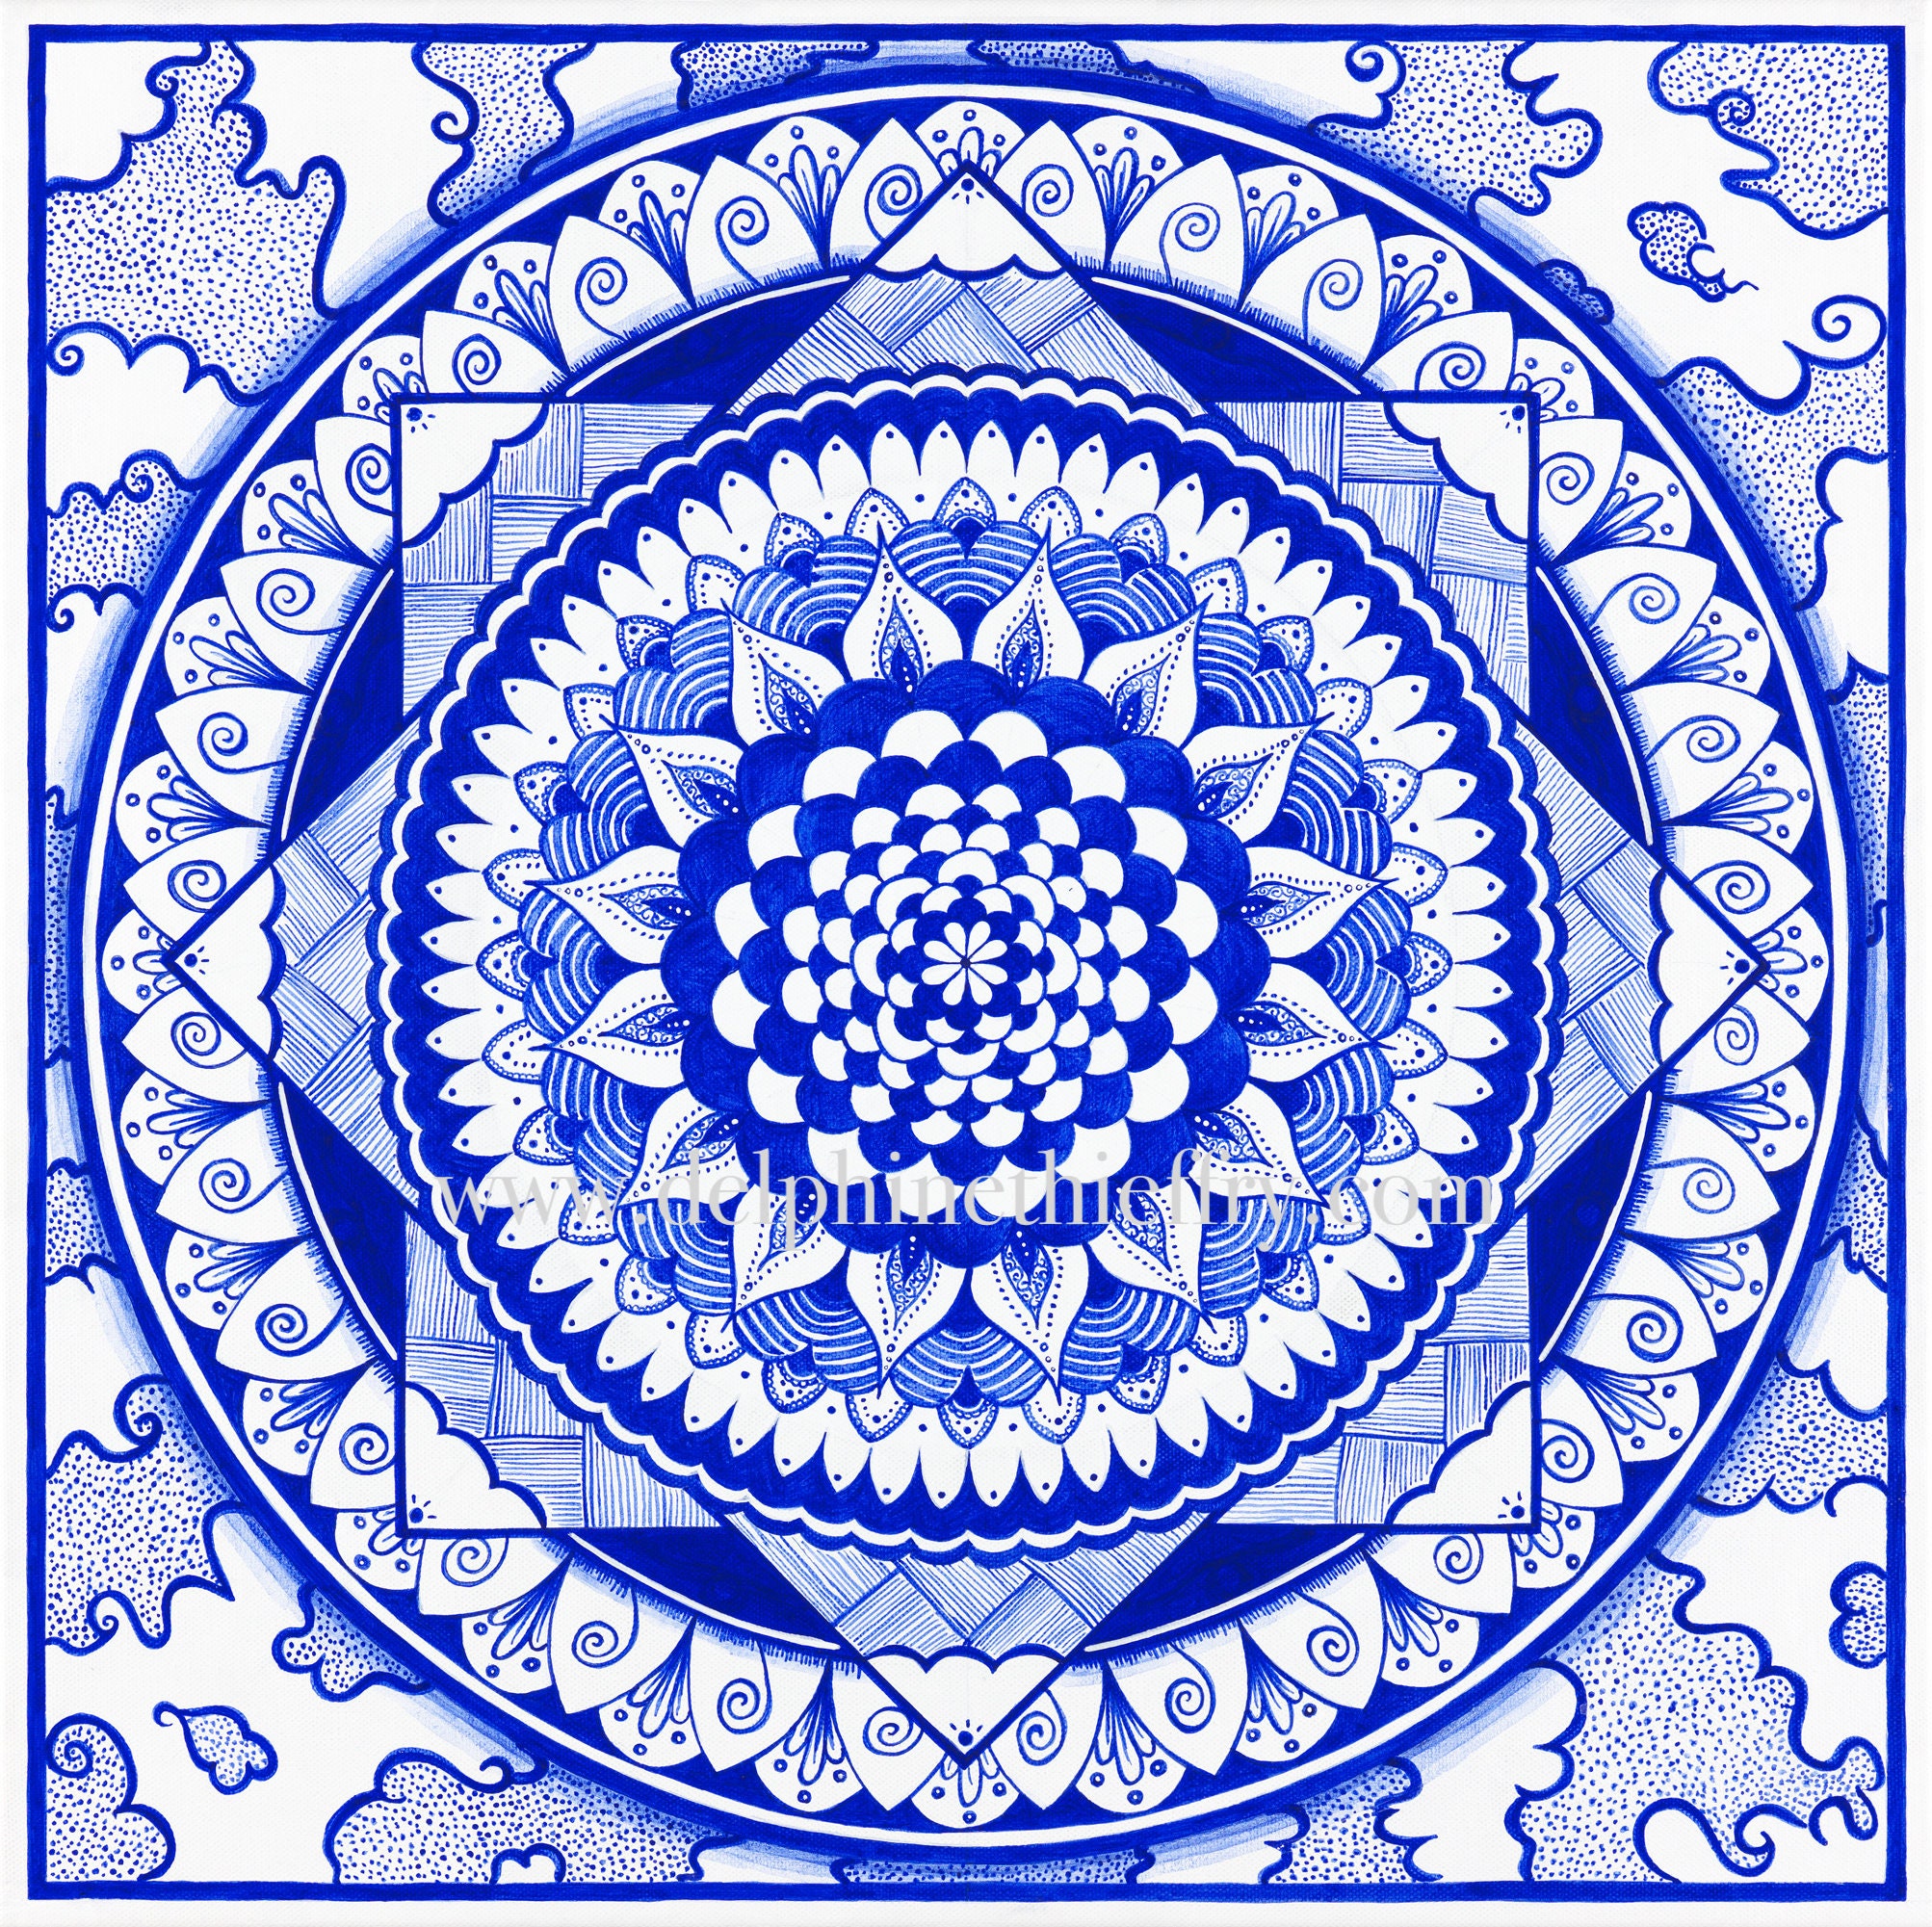 Descente Dans La Sphère - Mandala Bleu et Blanc Peinture Acrylique sur Toile de Coton Tableau Origin